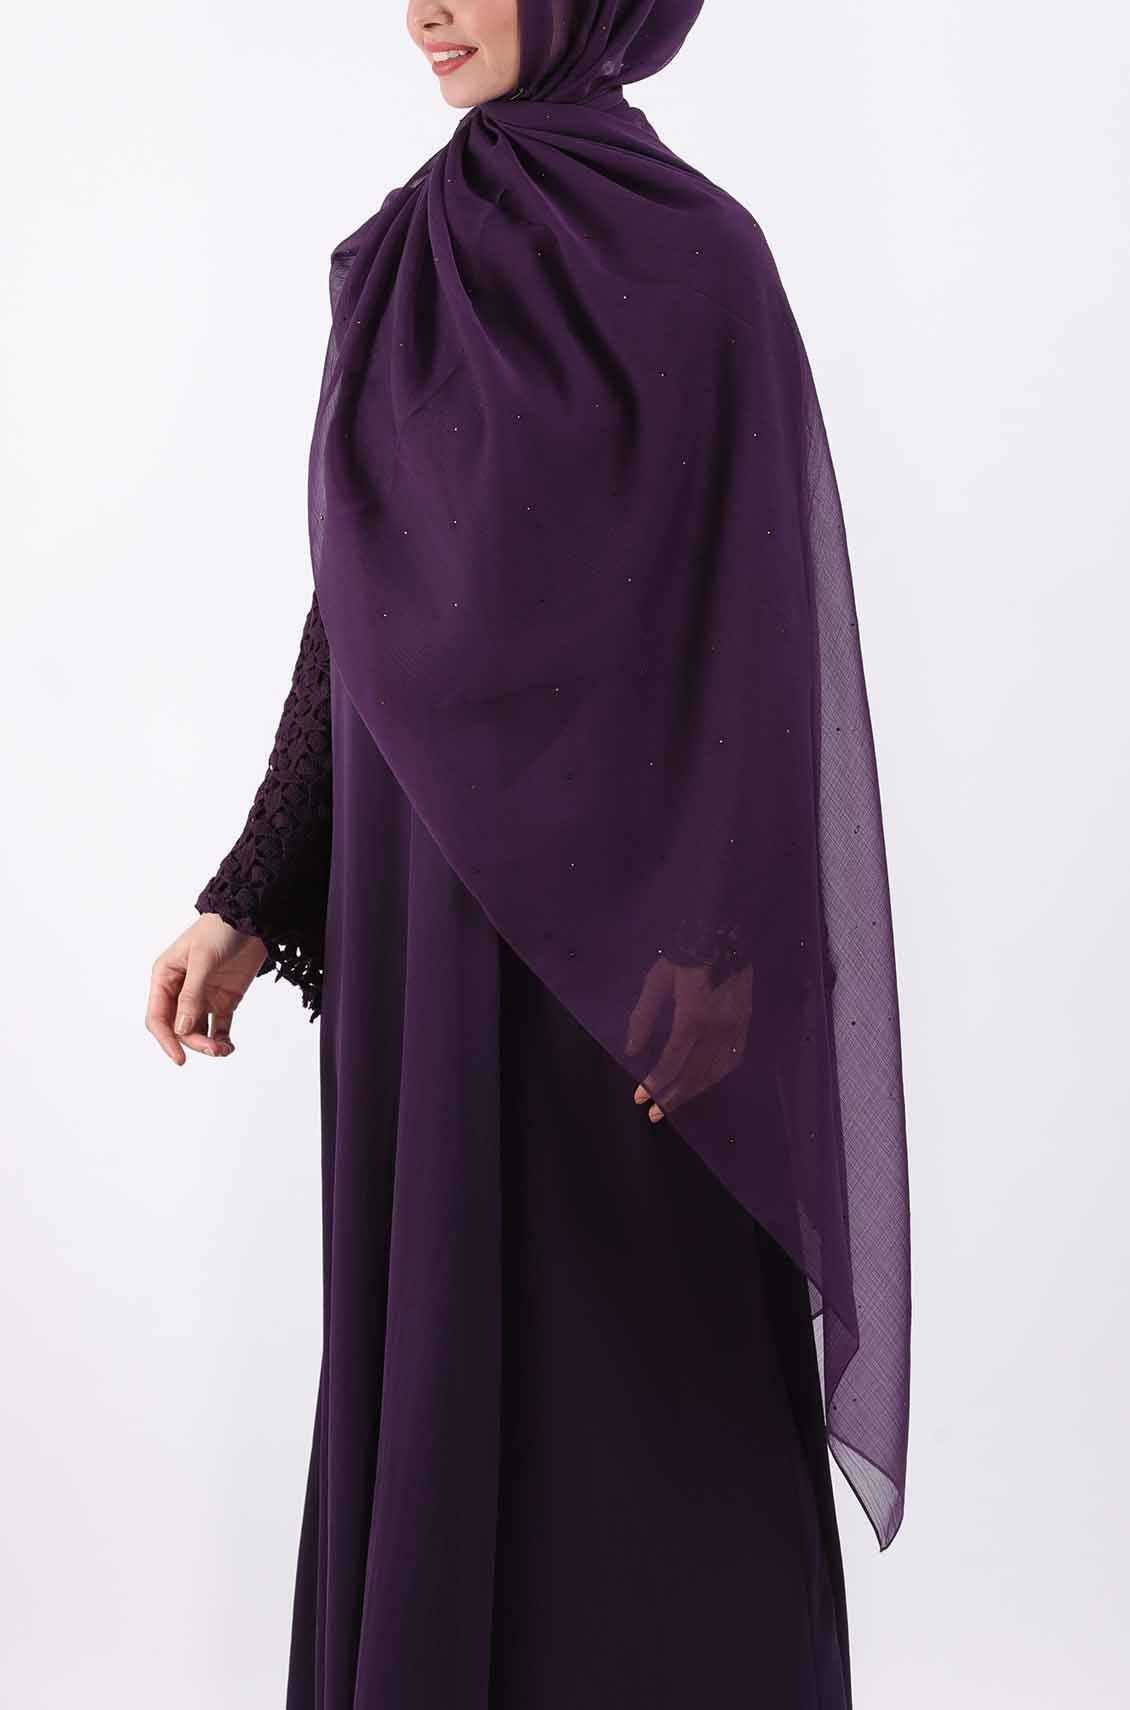 lace abaya dress